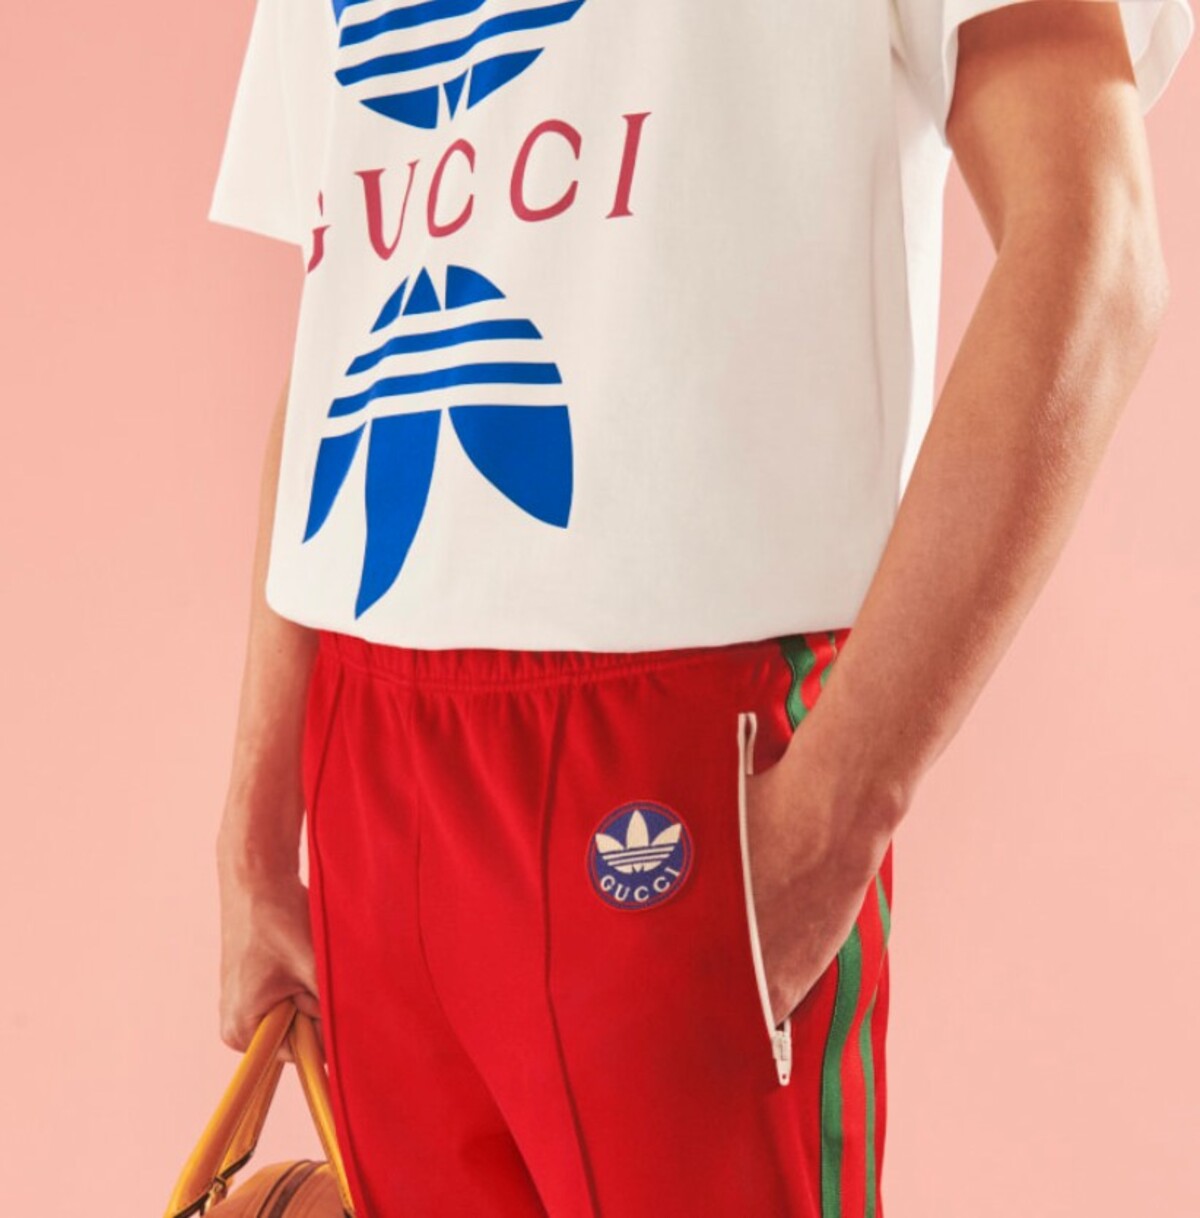 Gucci x Adidas predstavili farebnú kolekciu, ktorá je dokonalým oživením streetstylového outfitu.